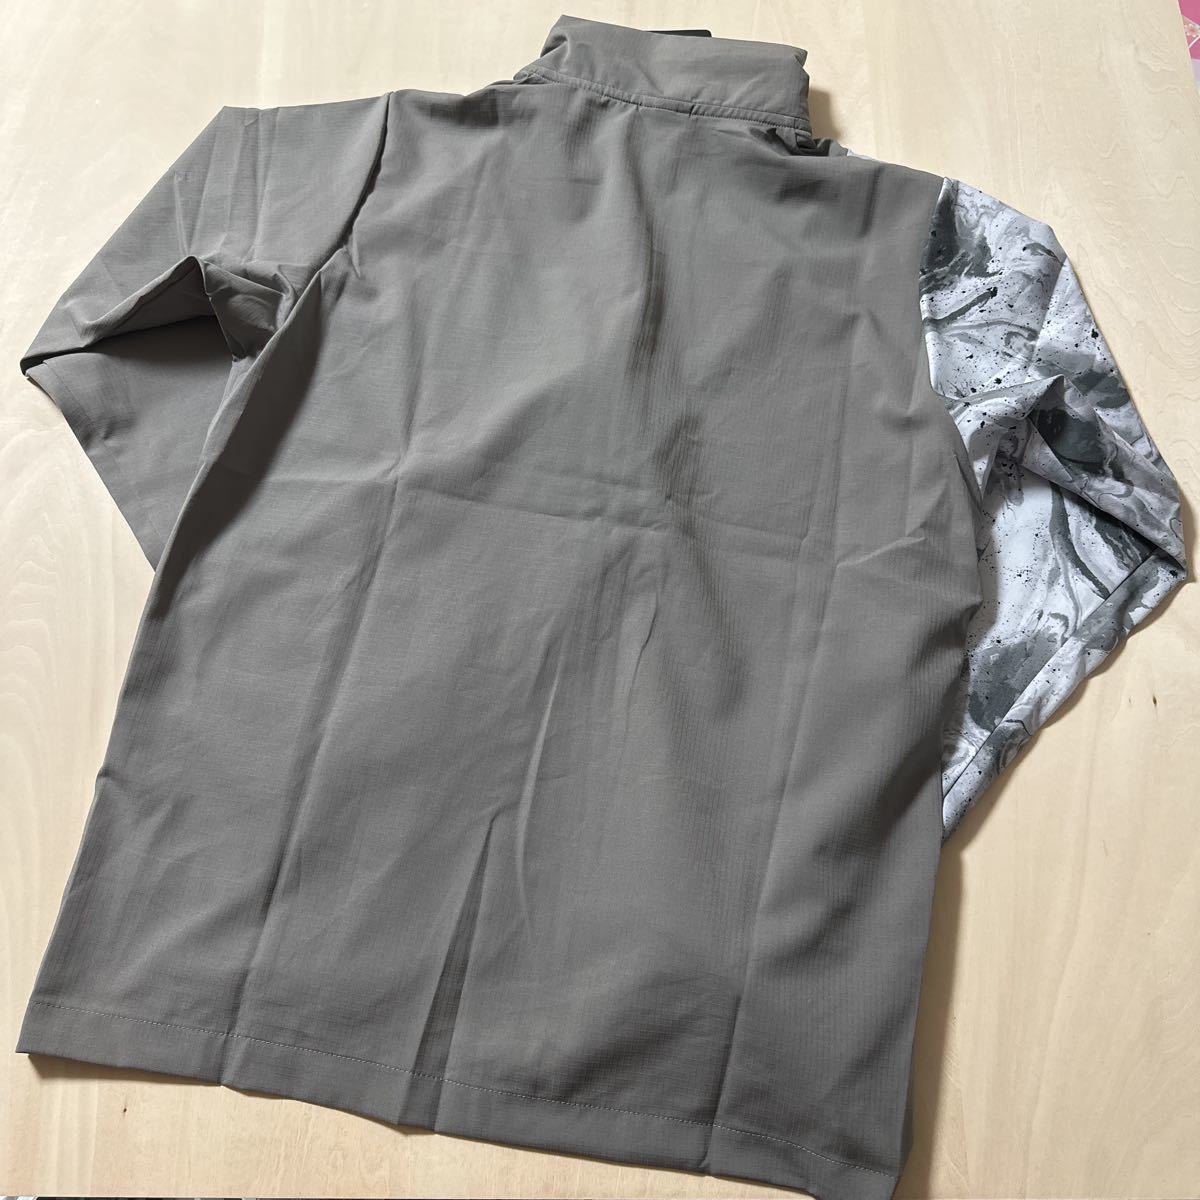 [M] новый товар обычная цена 8800 иен Oacley OAKLEY мужской спорт одежда жакет мужской FOA402910